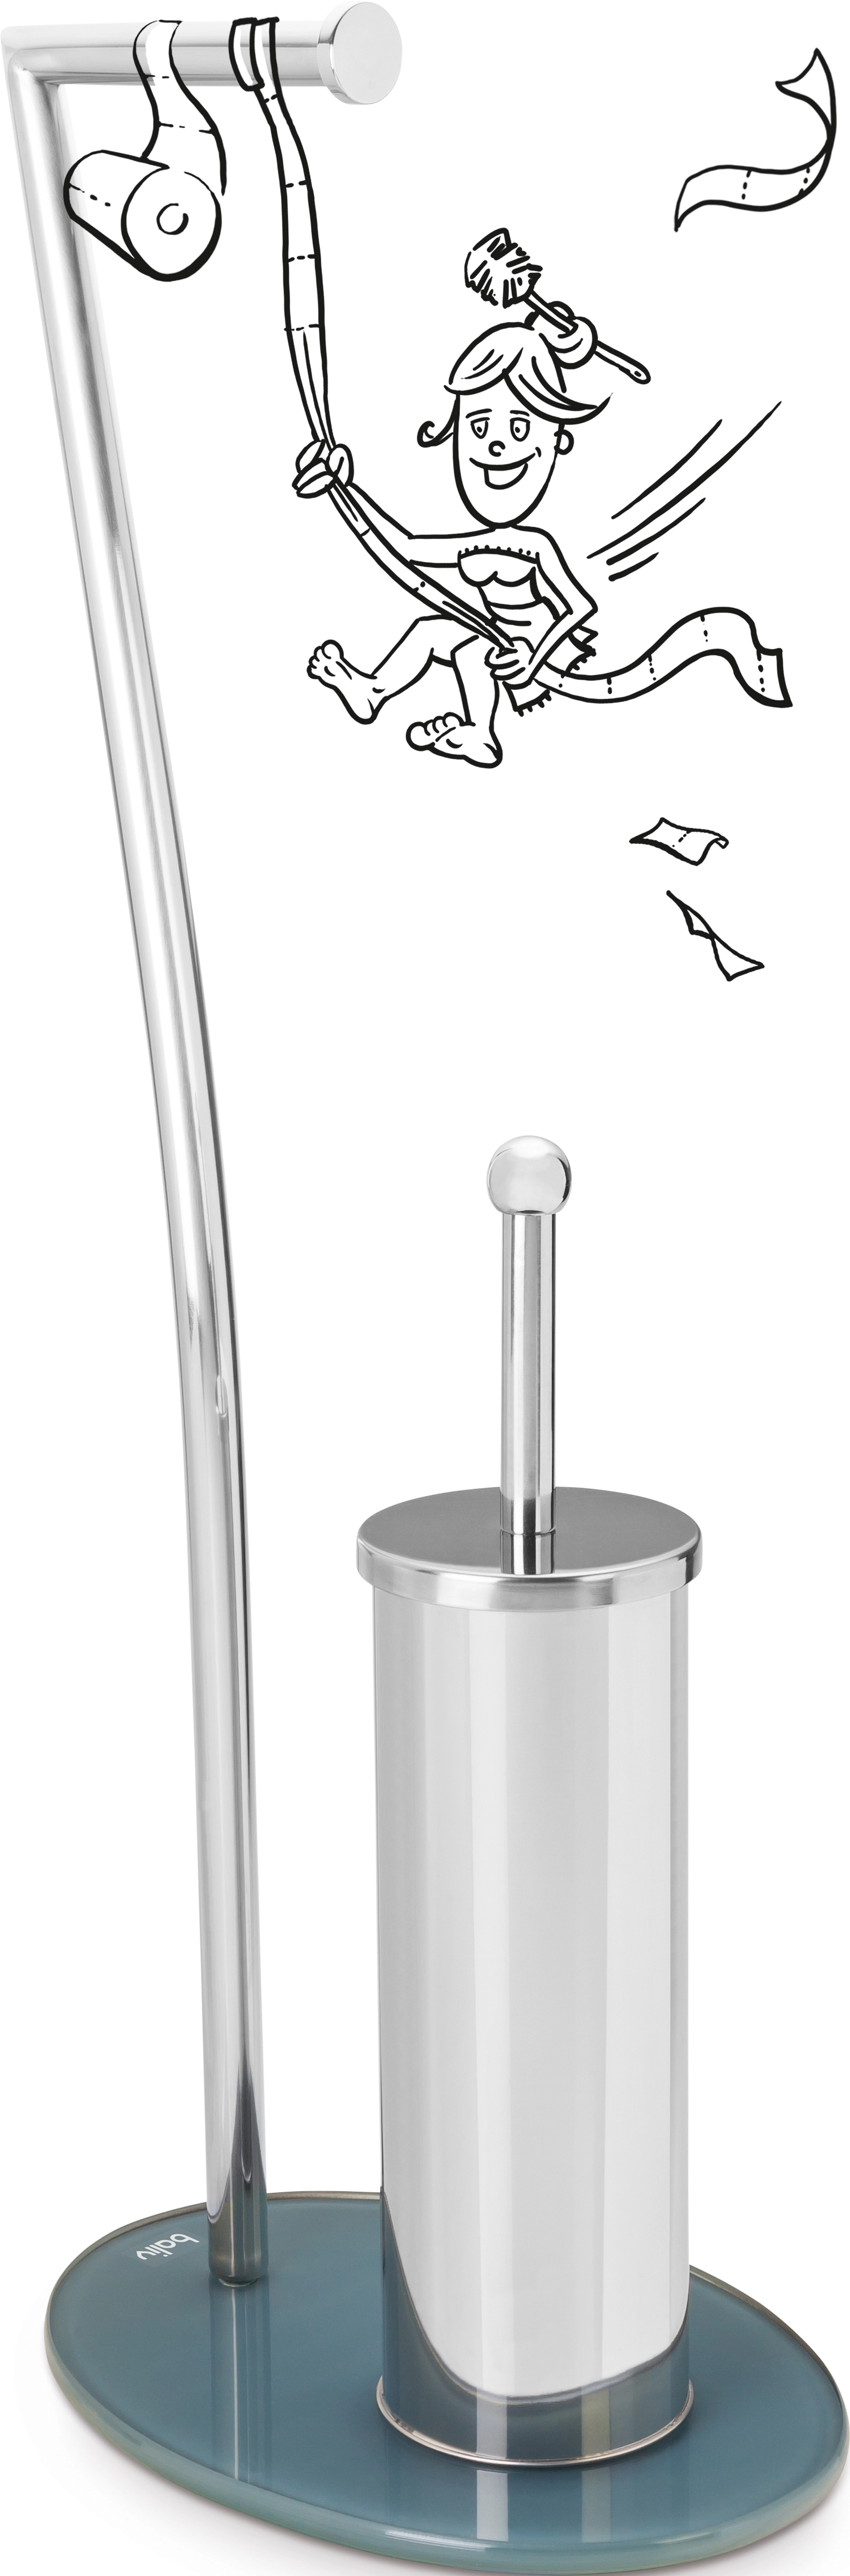 WC-Bürstengarnitur ST-6920 Chrom kaufen bei OBI | Toilettenbürstenhalter